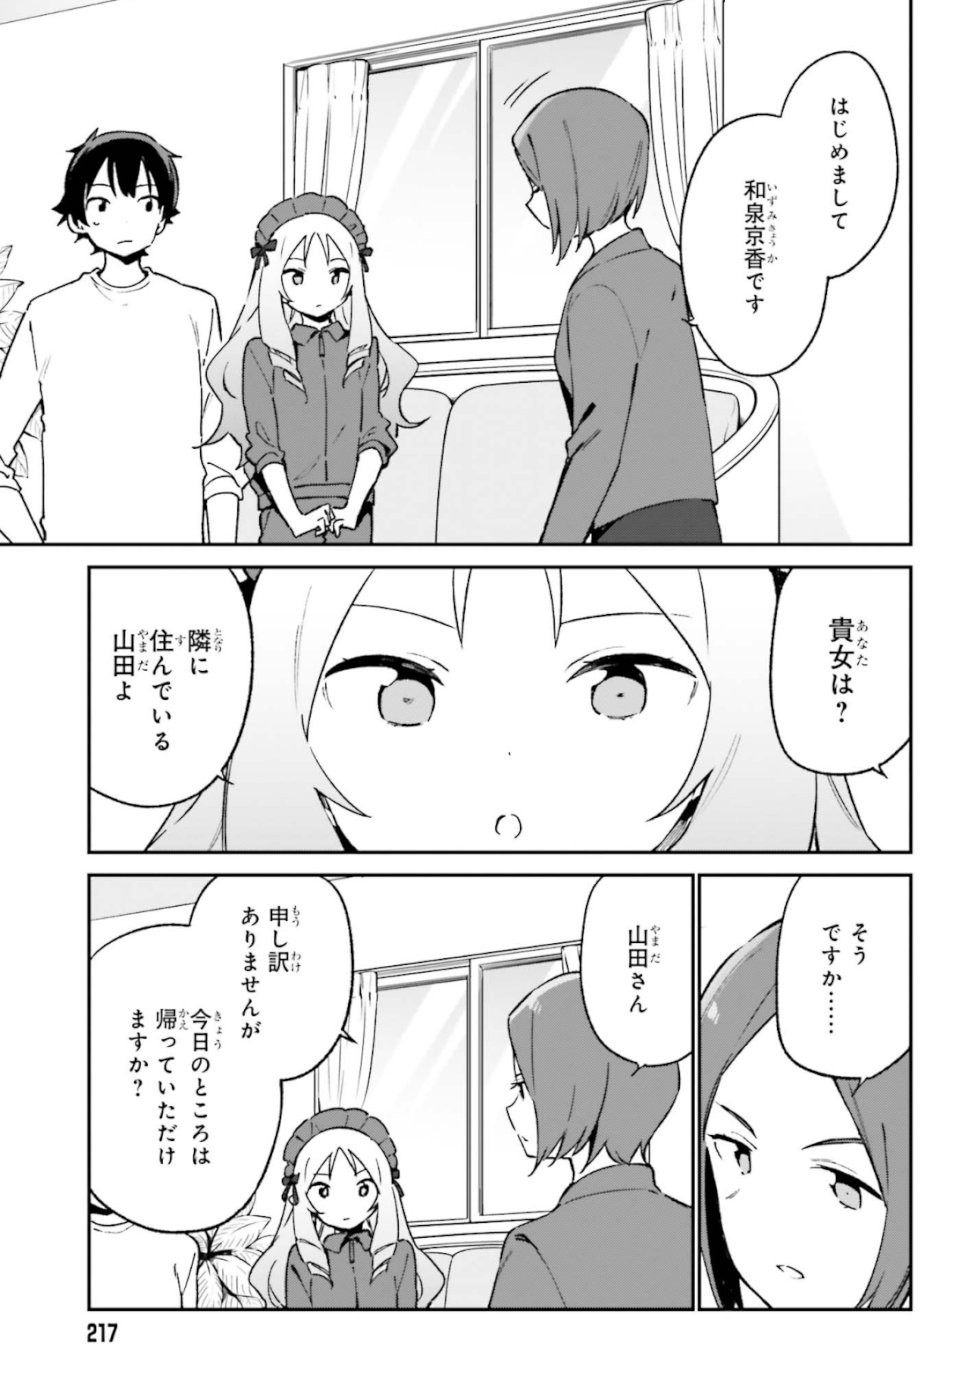 Ero Manga Sensei - Chapter 59 - Page 3